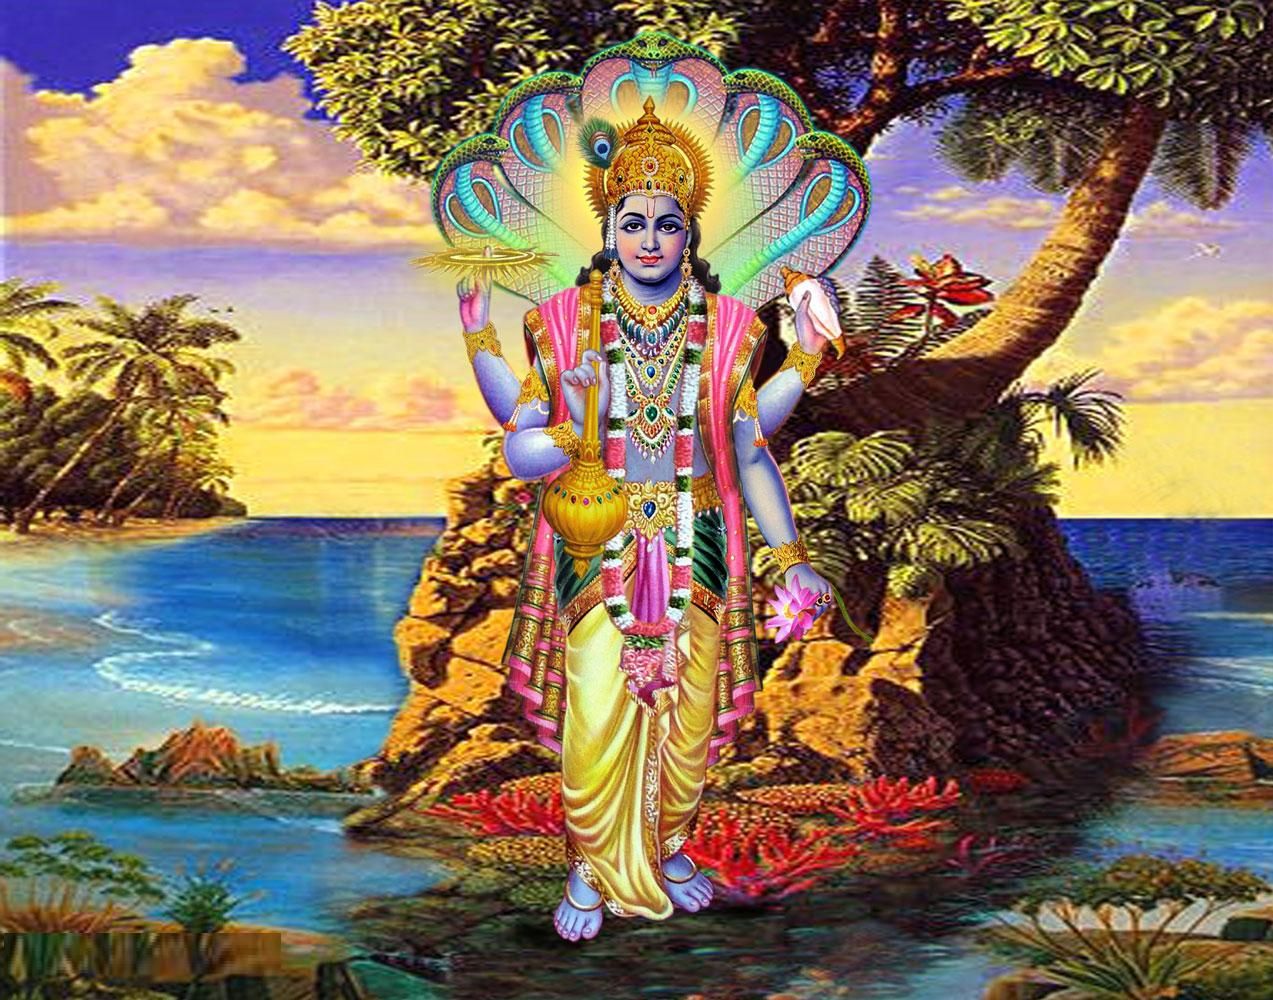 Vishnu god Black and White Stock Photos & Images - Alamy